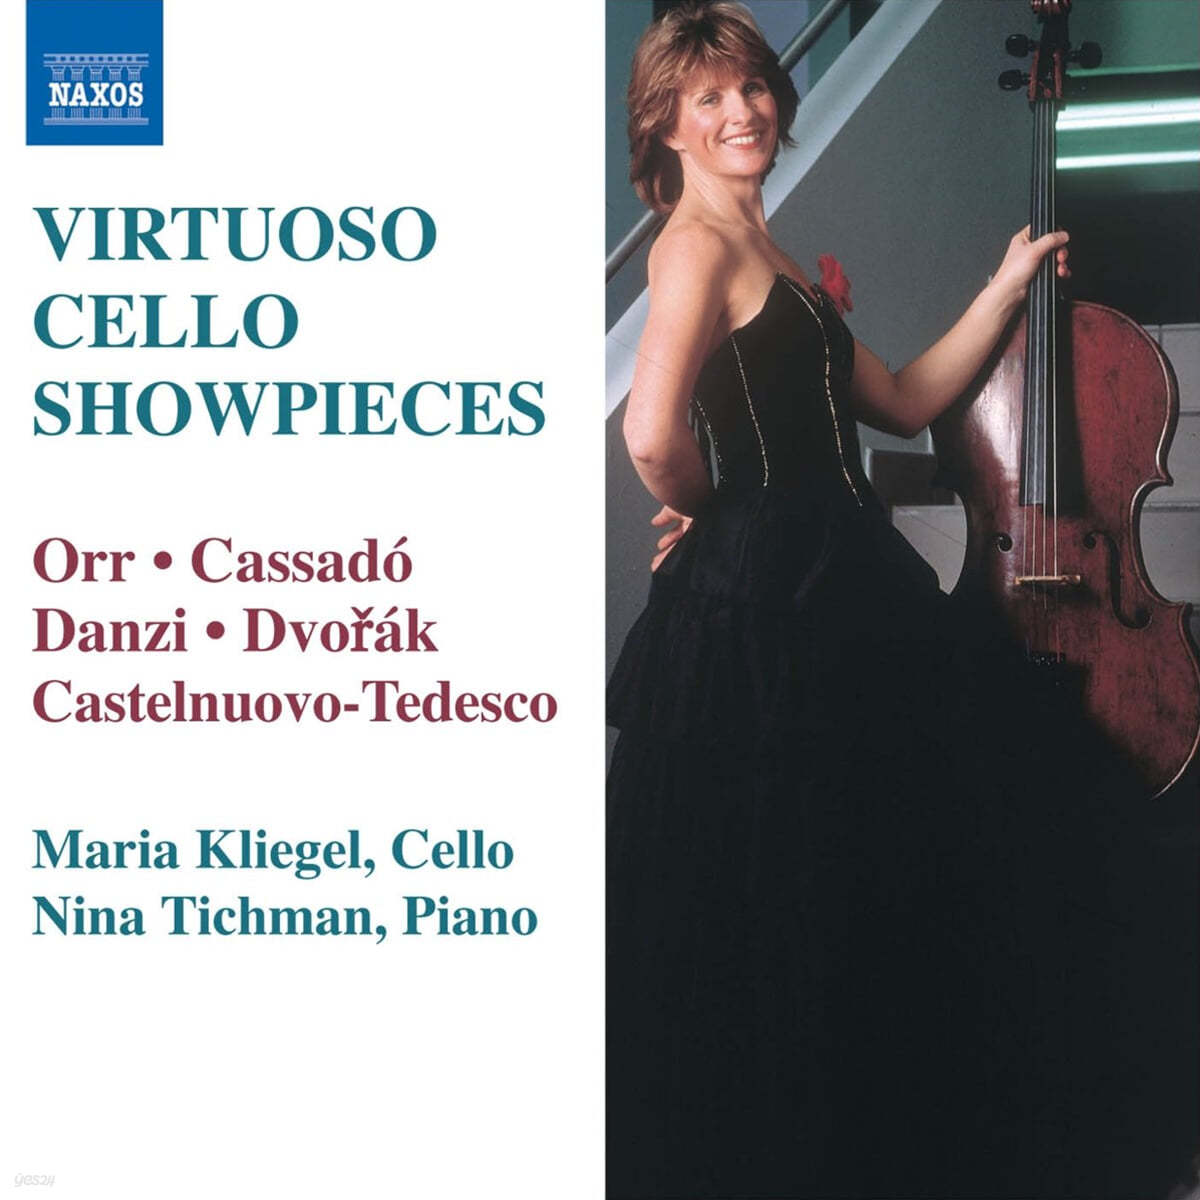 마리아 클리겔이 연주하는 비르투오조 첼로 모음집 (Maria Kliegel - Virtuoso Cello Showpieces) 